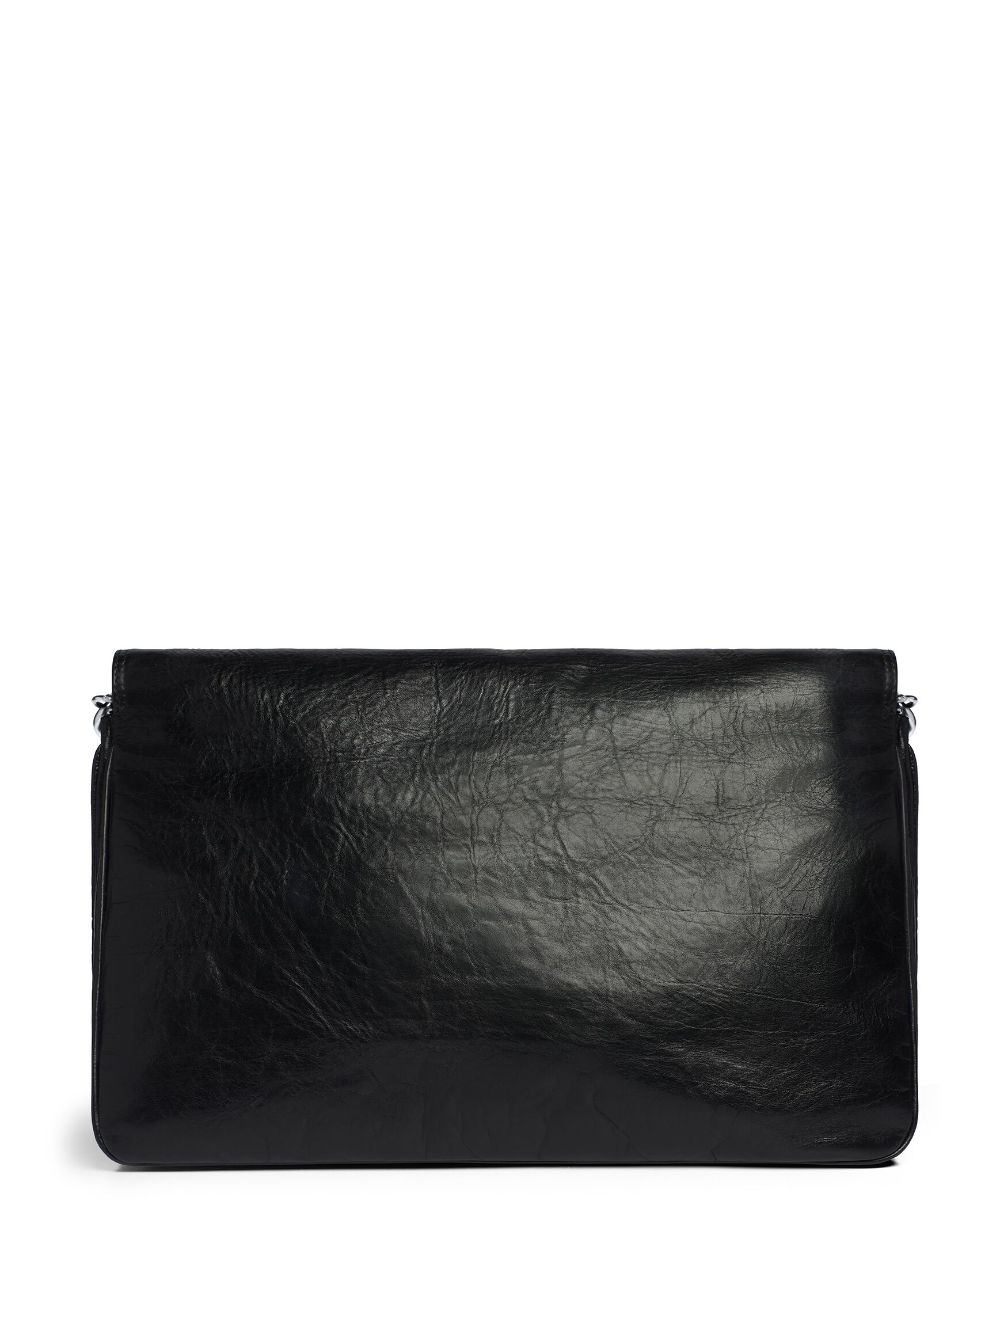 Balenciaga Large BB Soft Flap Shoulder Bag - Farfetch